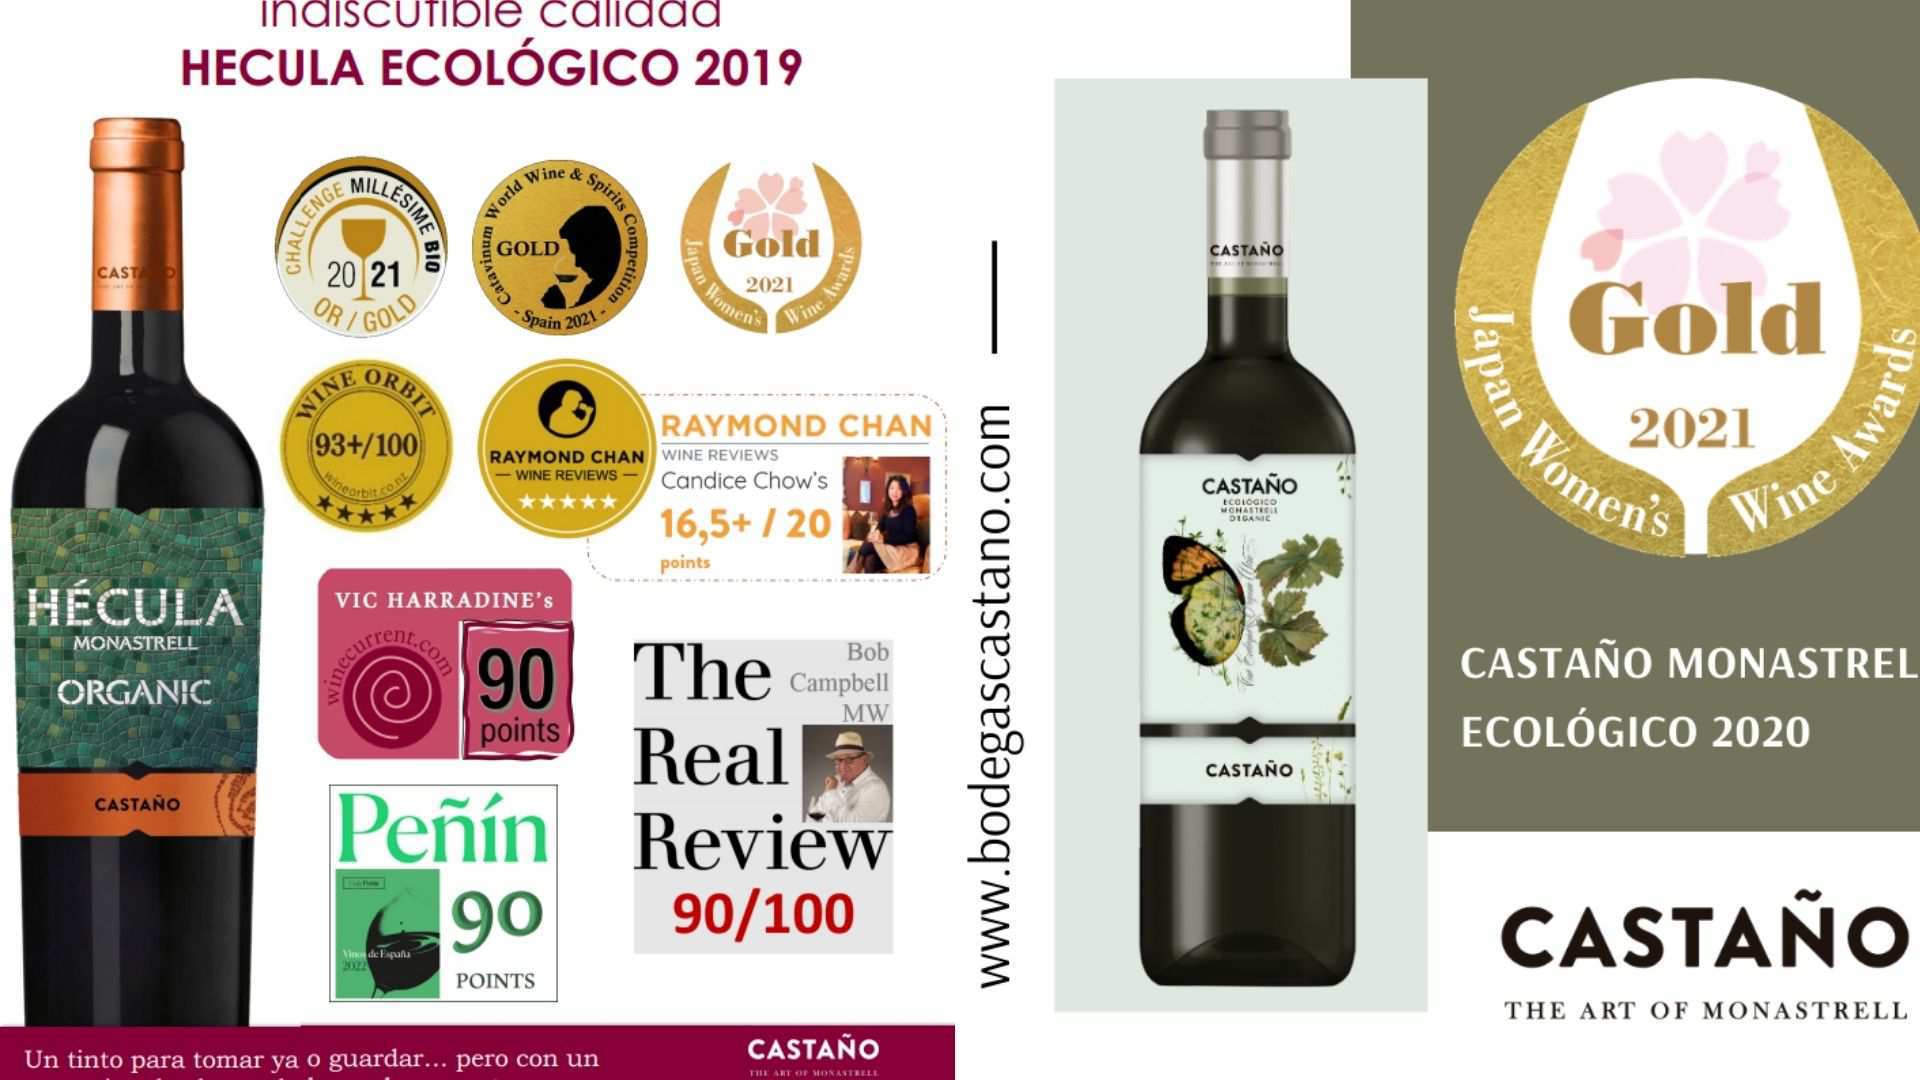 Bodegas Castaño recoge grandes premios por sus vinos ecológicos